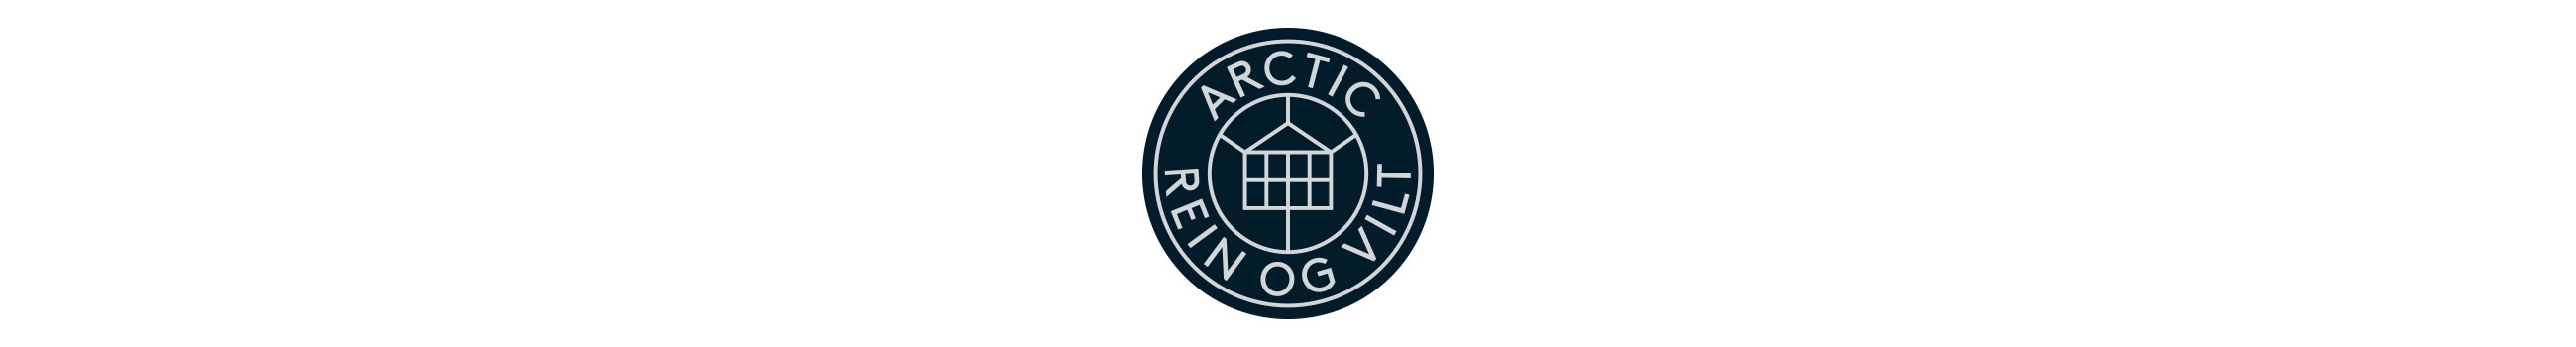 Arctic Rein og Vilt logo